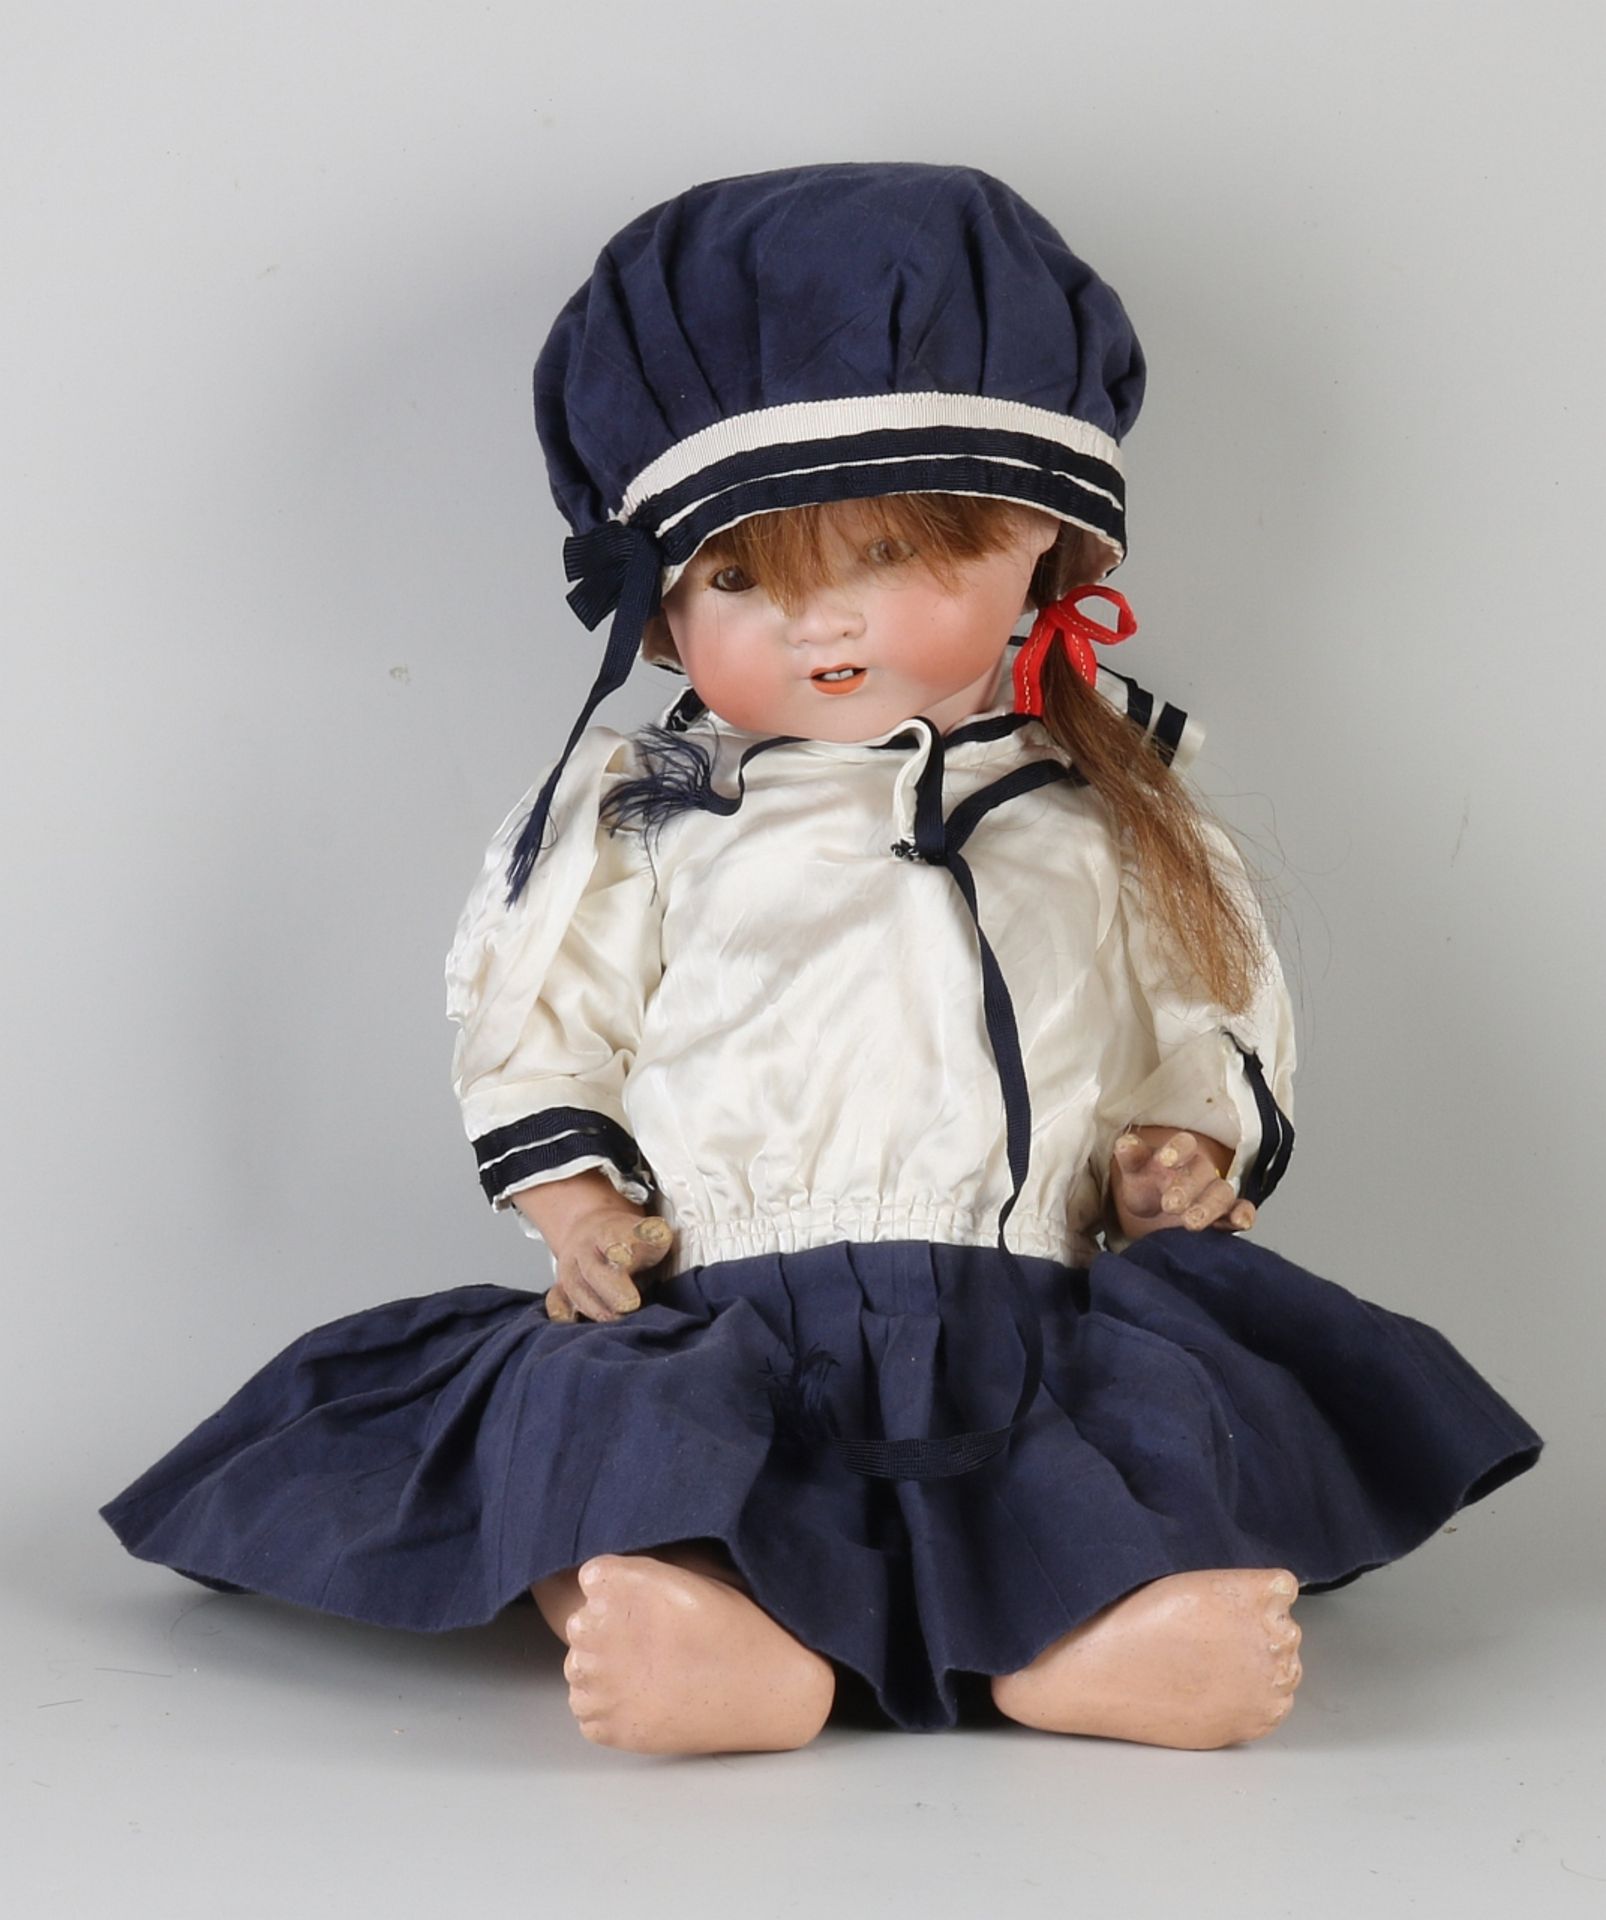 Armand Marseille doll, 1920